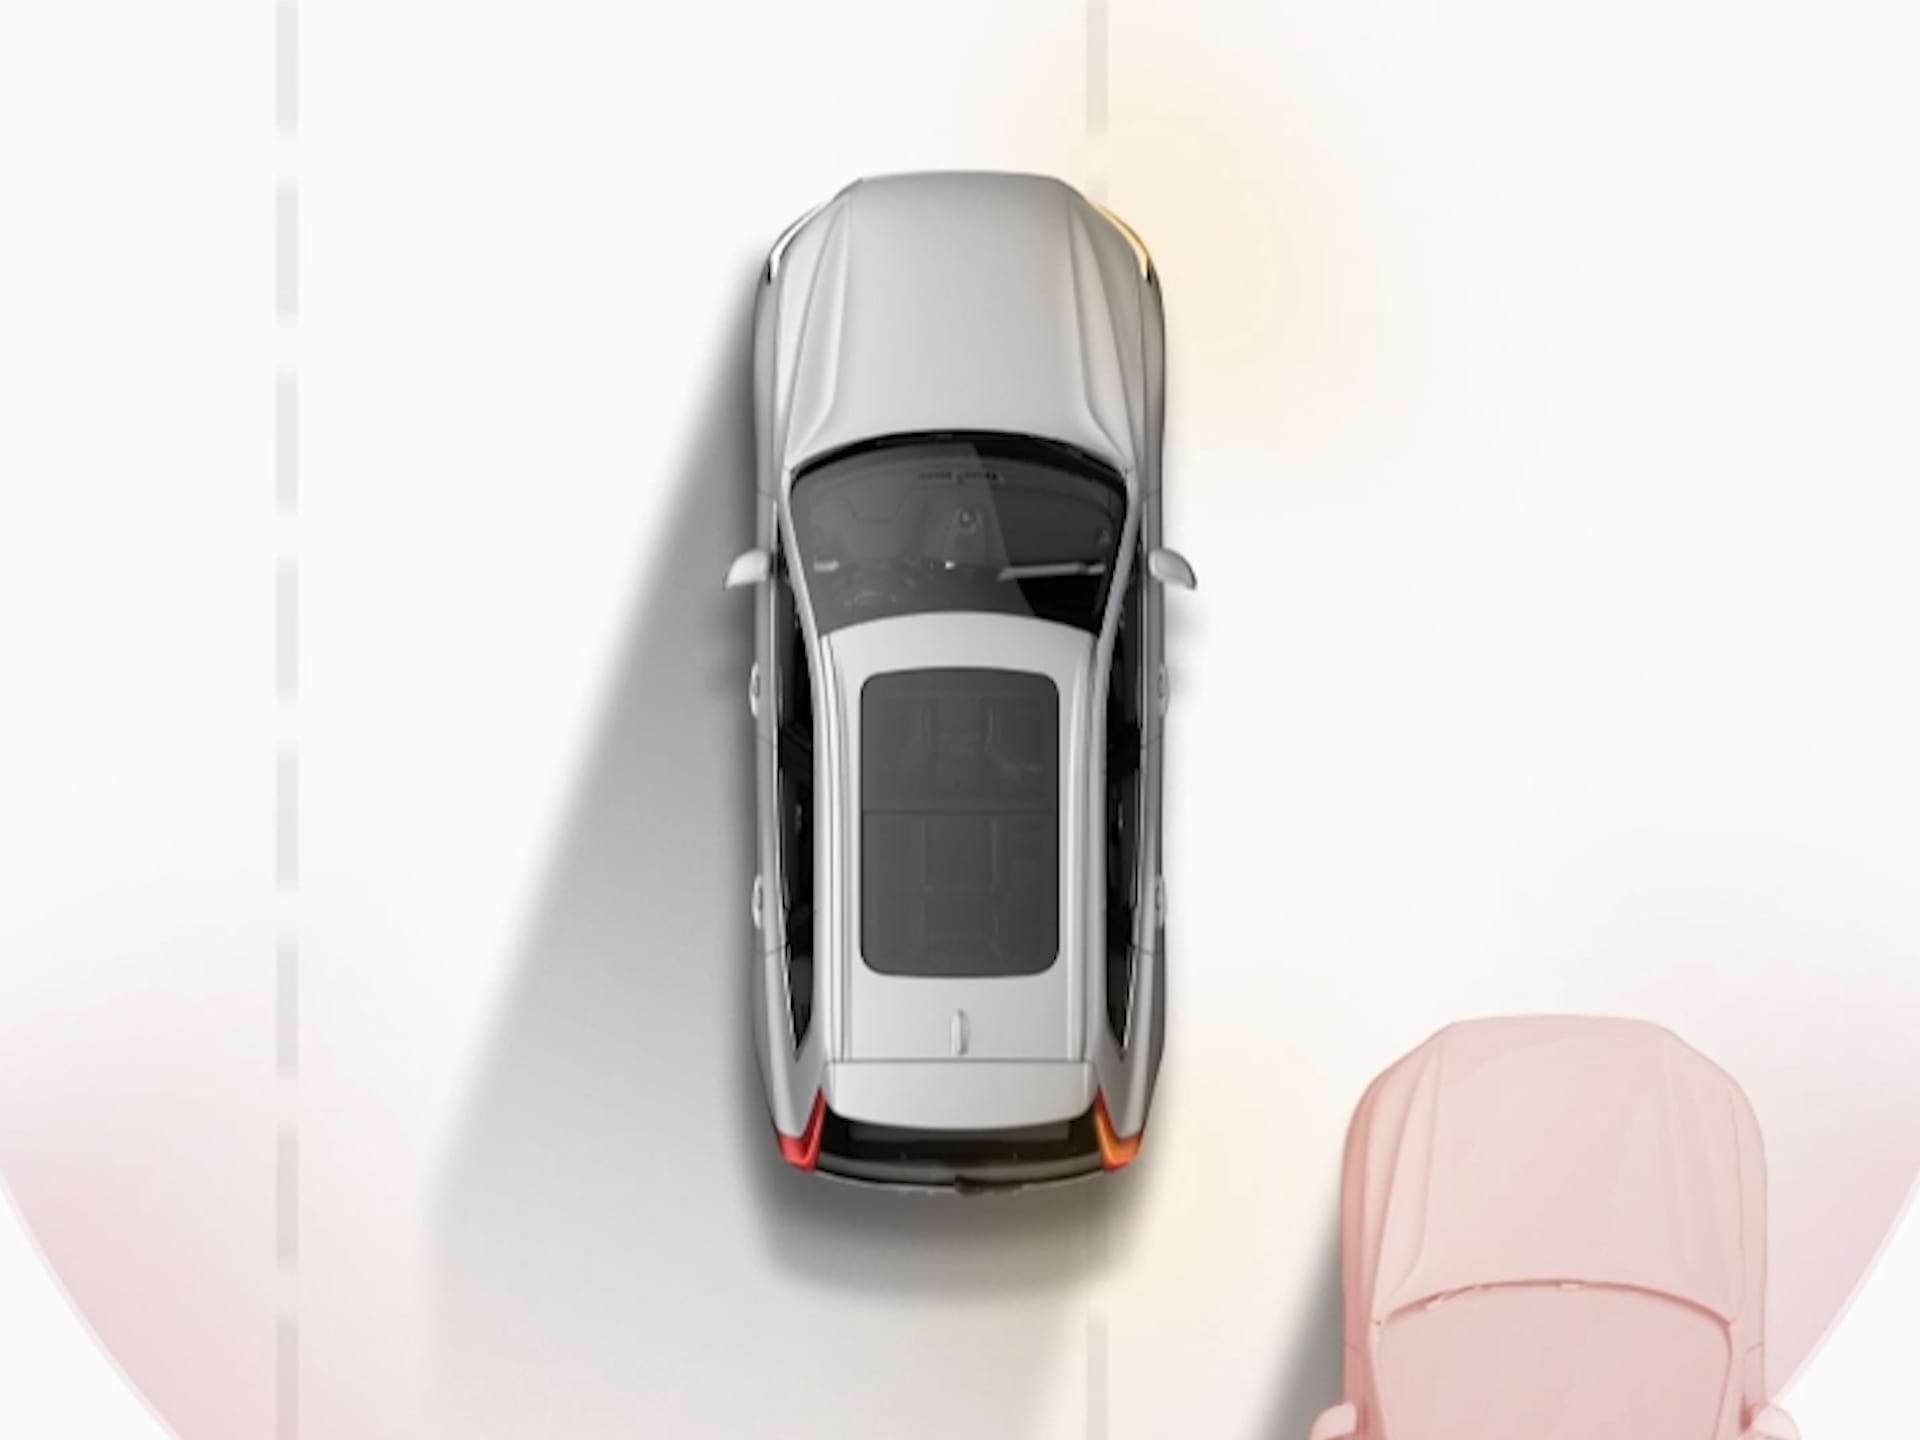 Ilustrace vozu Volvo jedoucího vedle jiných vozidel při pohledu shora.